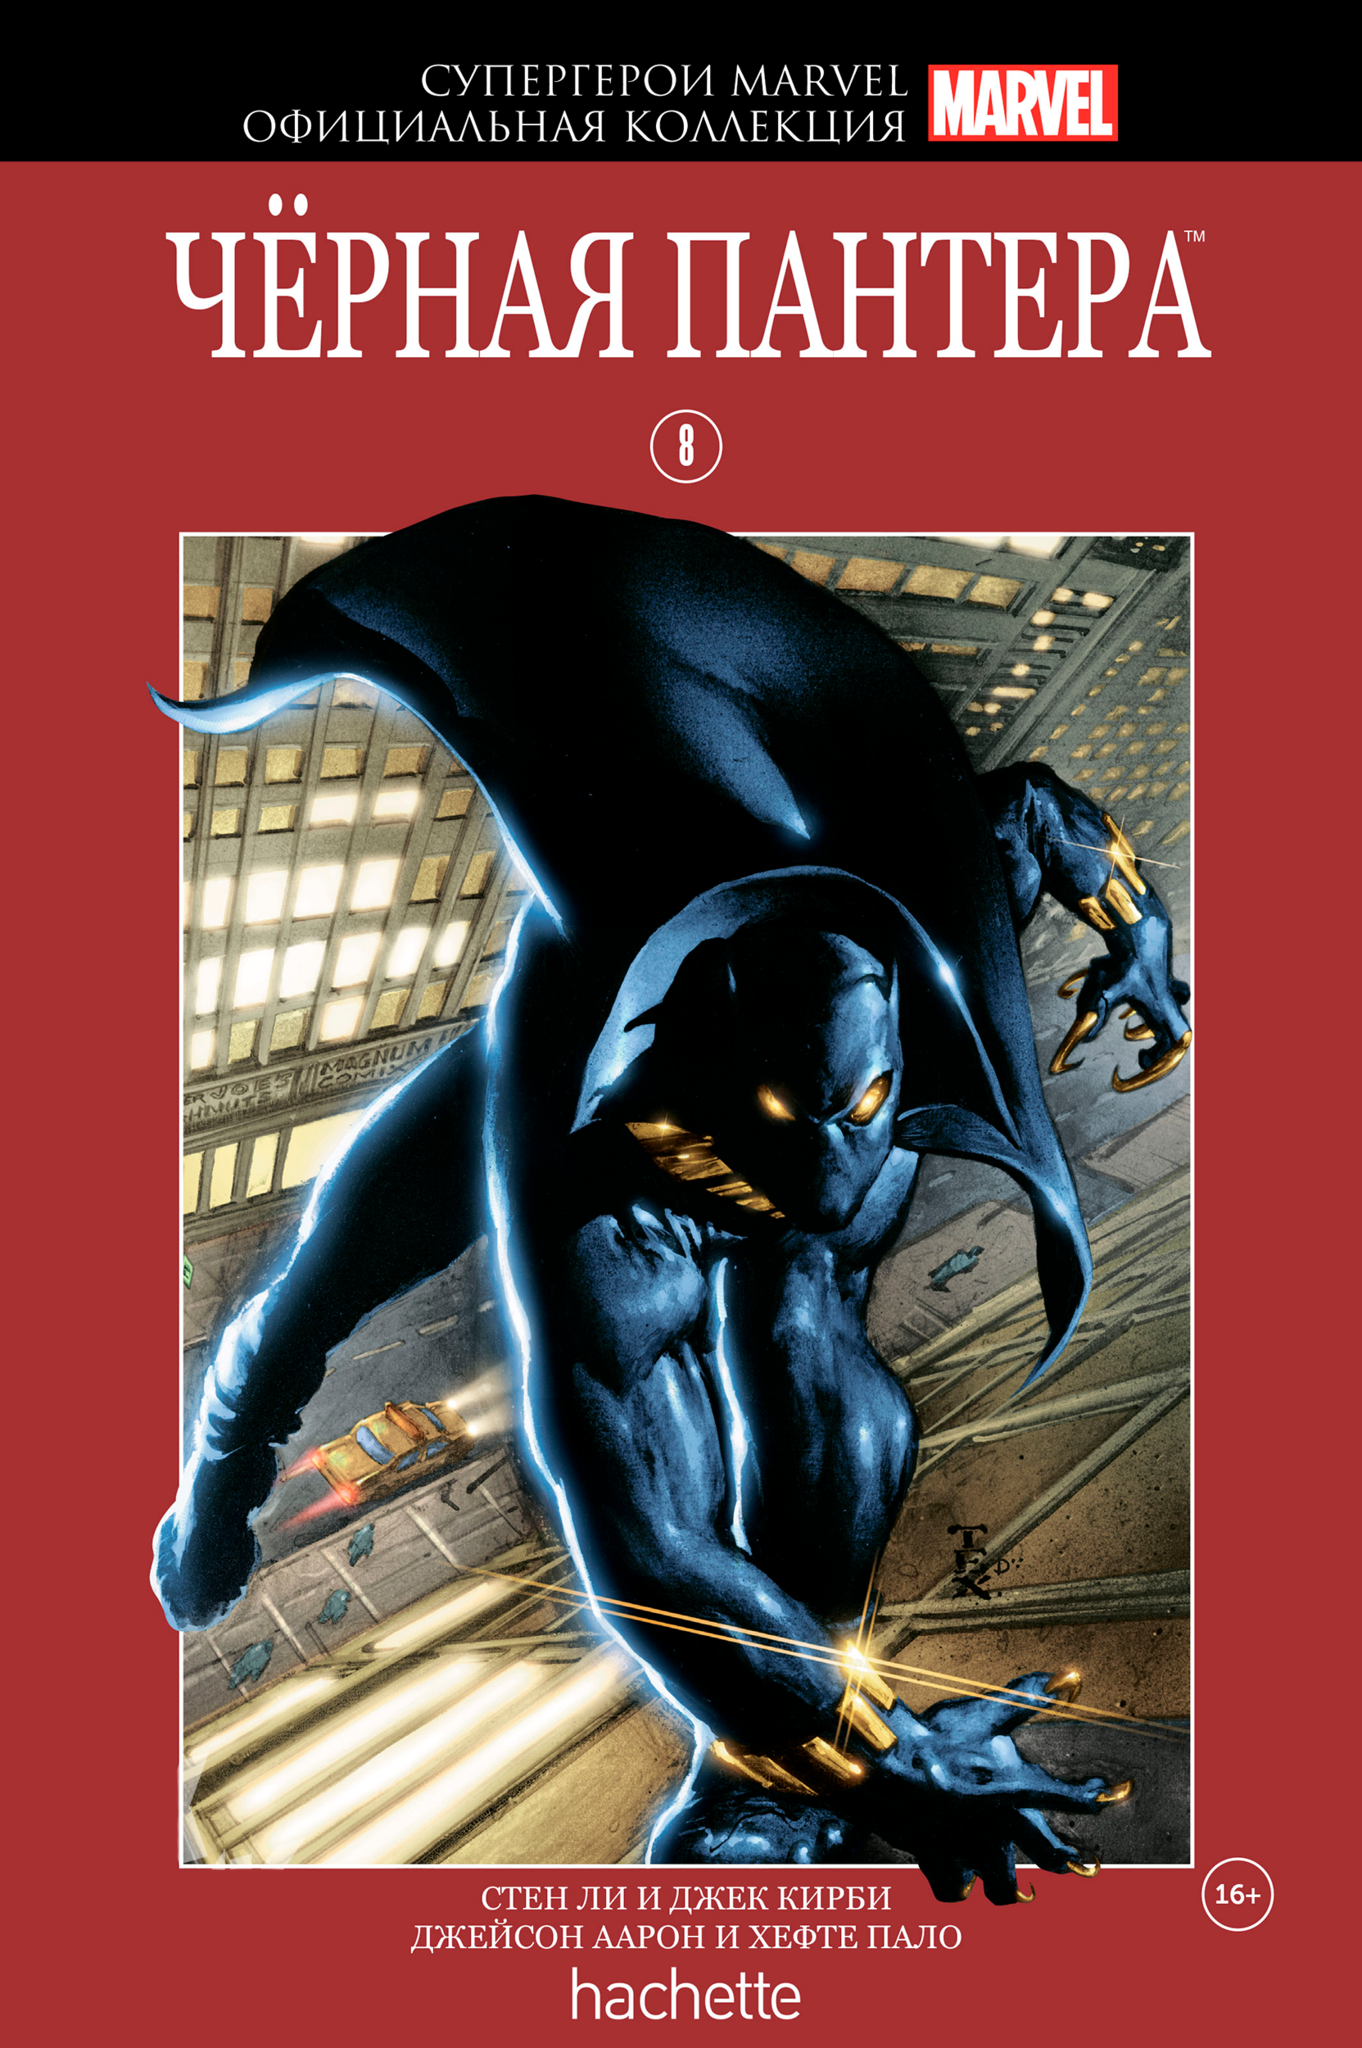 

Hachette Официальная коллекция комиксов Супергерои Marvel: Чёрная Пантера. Том 8